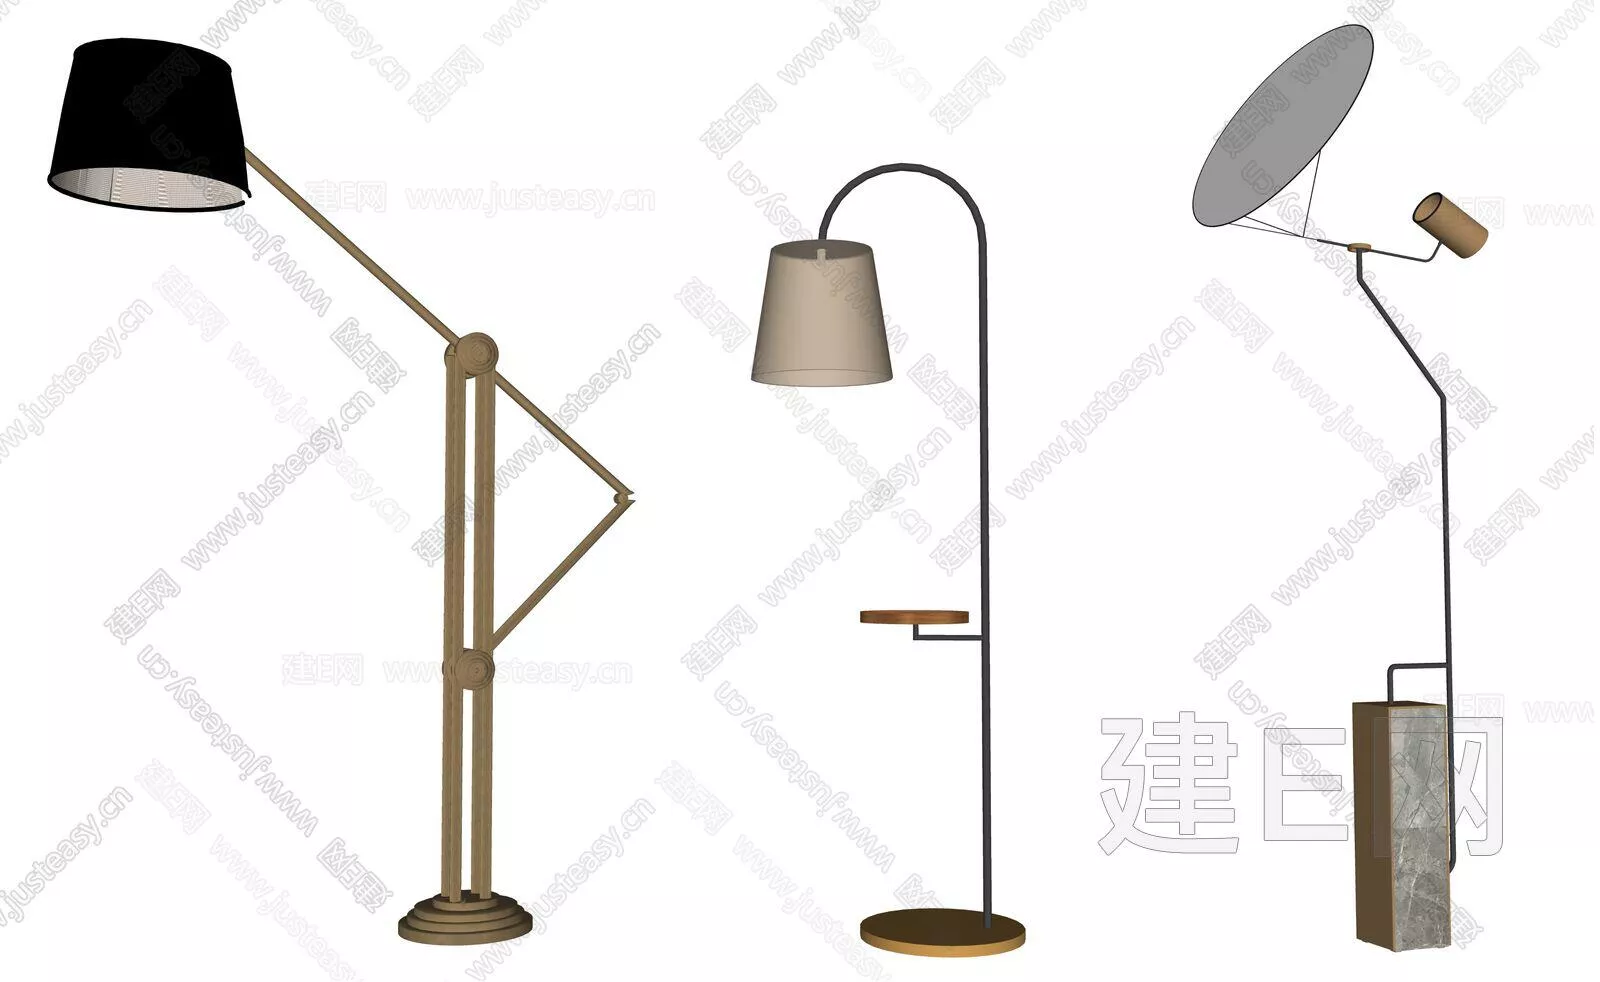 MODERN TABLE LAMP - SKETCHUP 3D MODEL - ENSCAPE - 112738711